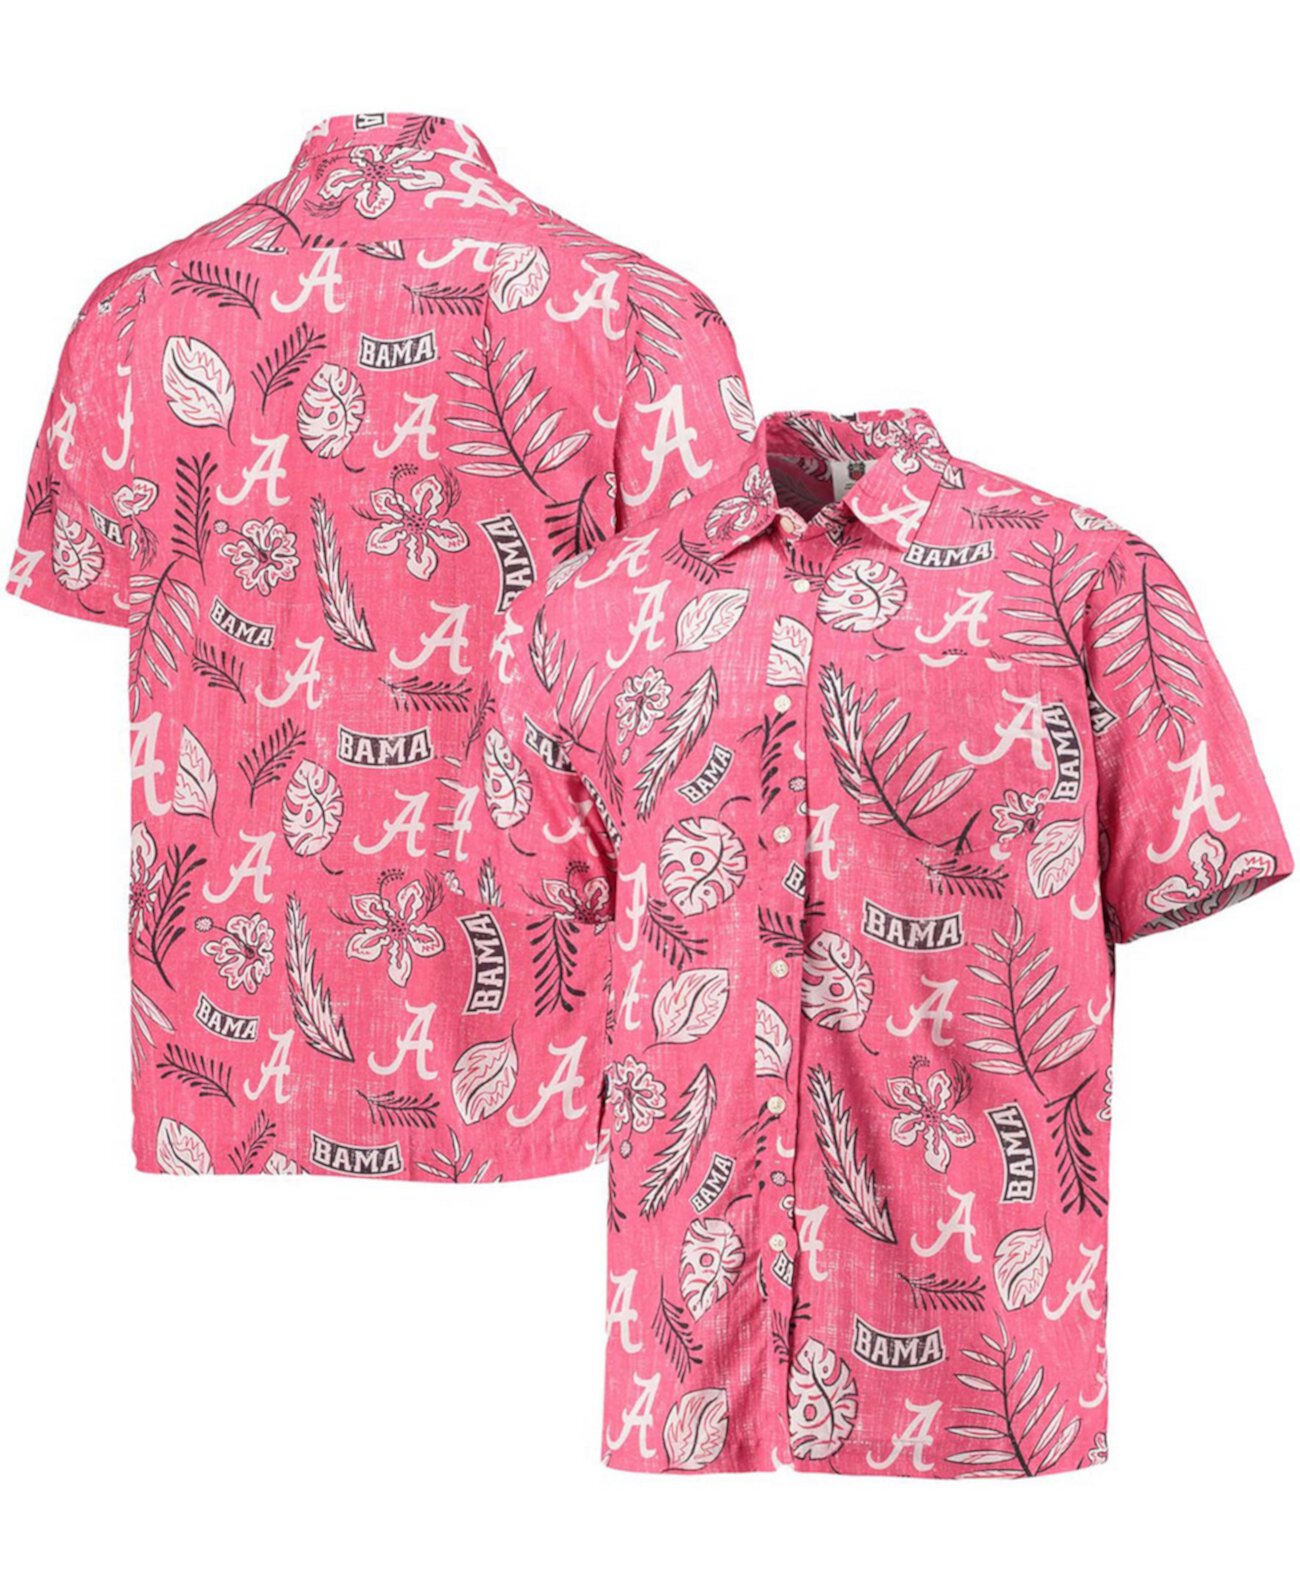 Мужская рубашка на пуговицах в винтажном стиле с цветочным рисунком Crimson Alabama Crimson Tide Wes & Willy